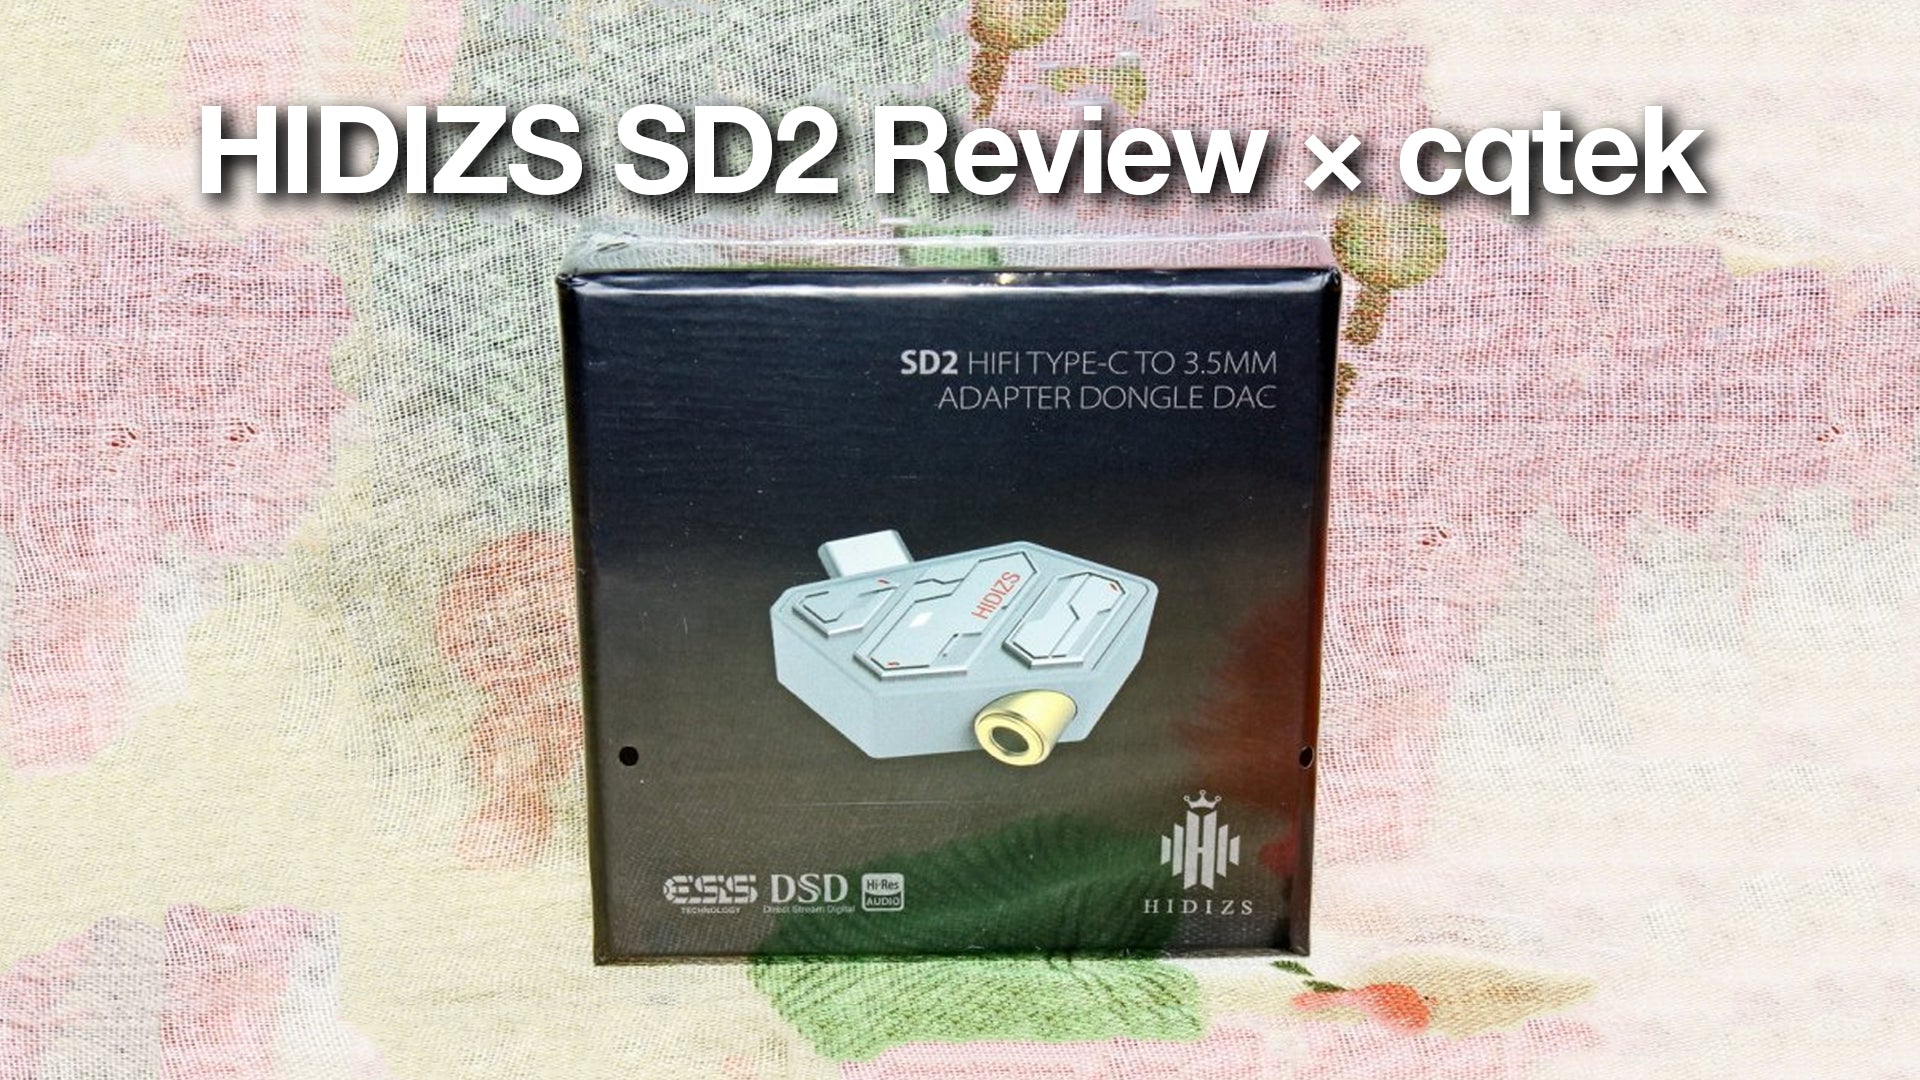 HIDIZS SD2 Review - cqtek